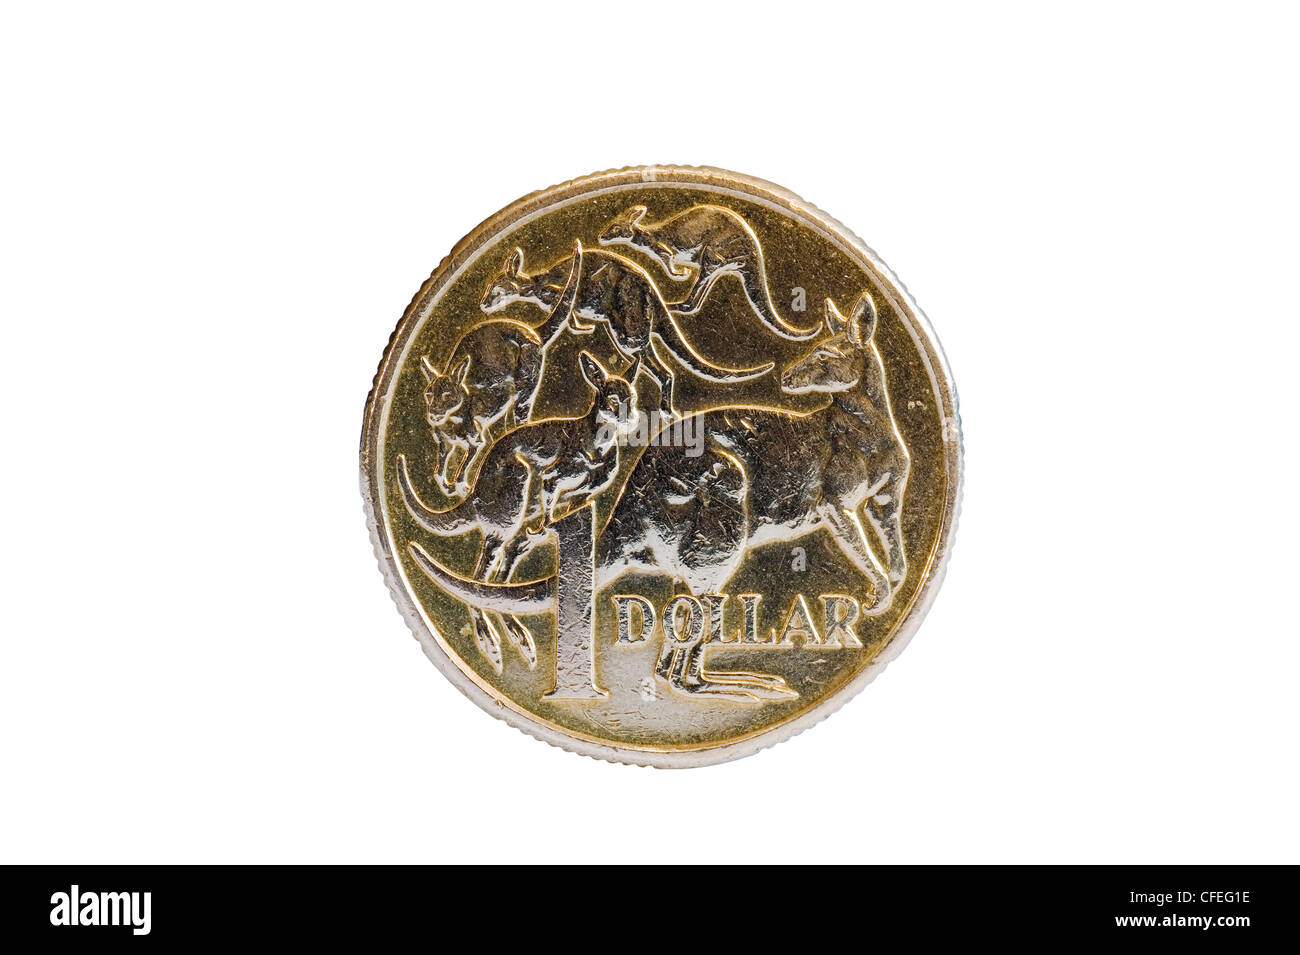 Auf der Rückseite von einem australischen 1-Dollar-Münze Geld zeigt fünf Kängurus Beuteltiere Tiere Stockfoto